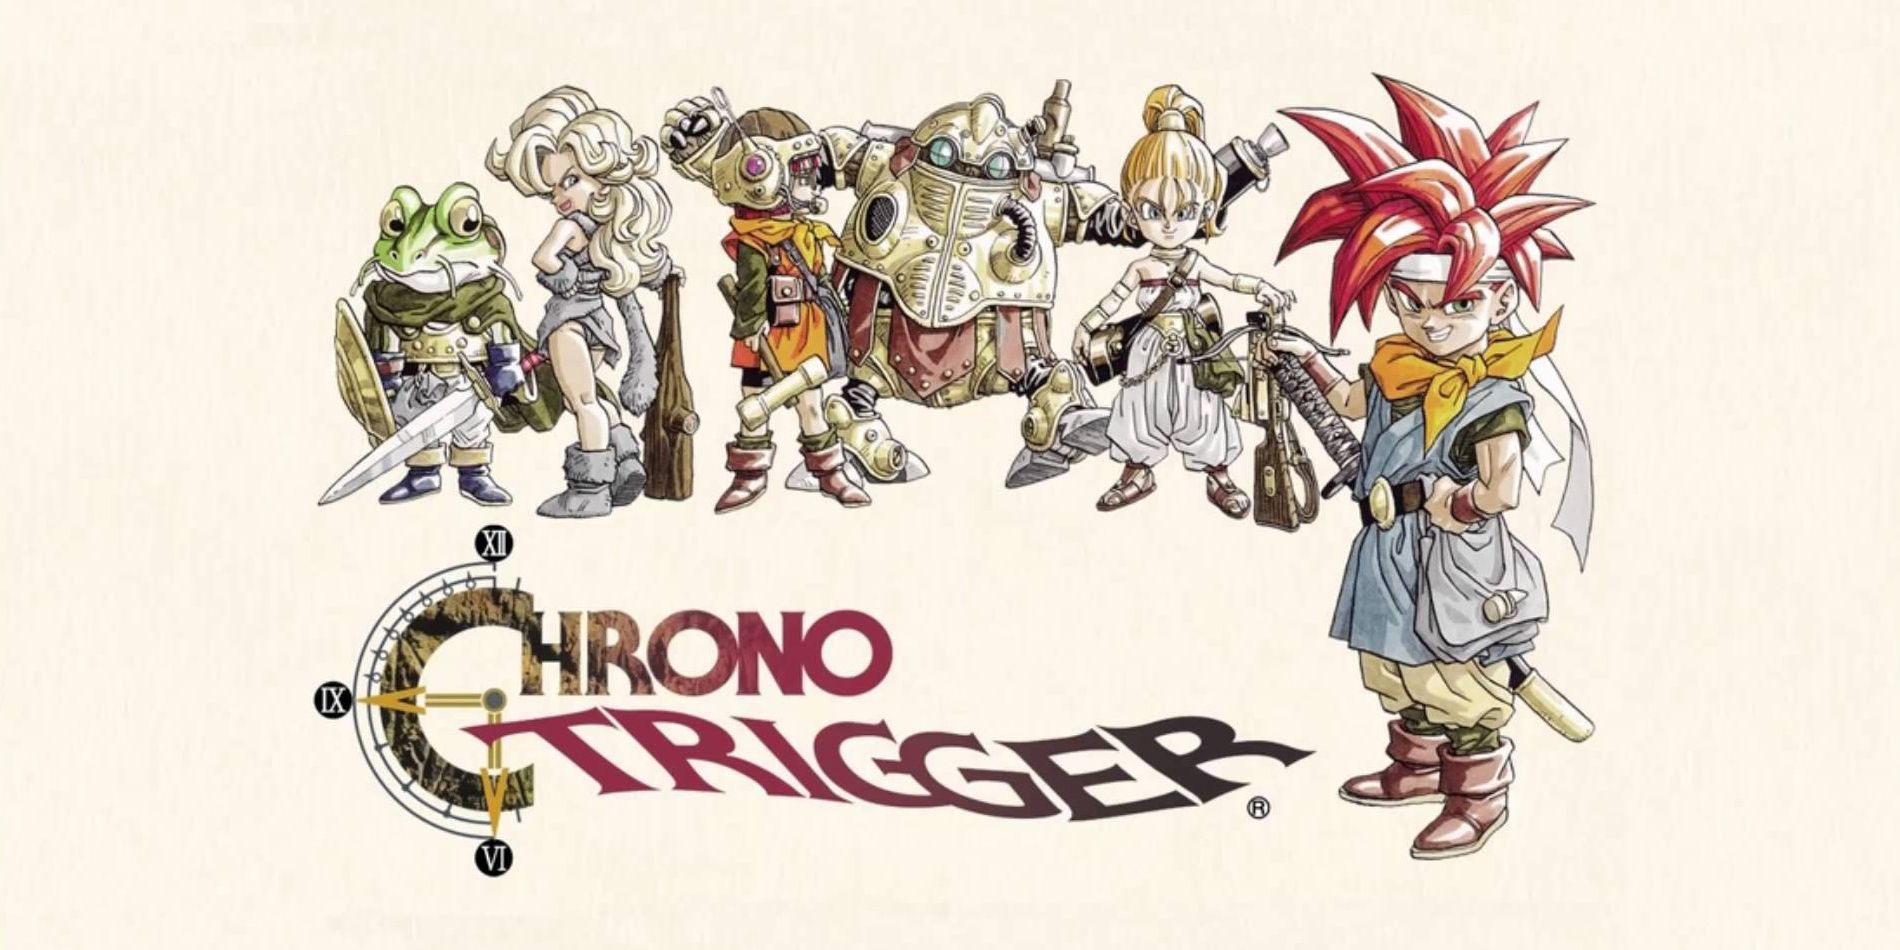 Arte chave de Chrono Trigger OST com o herói e seu elenco de apoio.